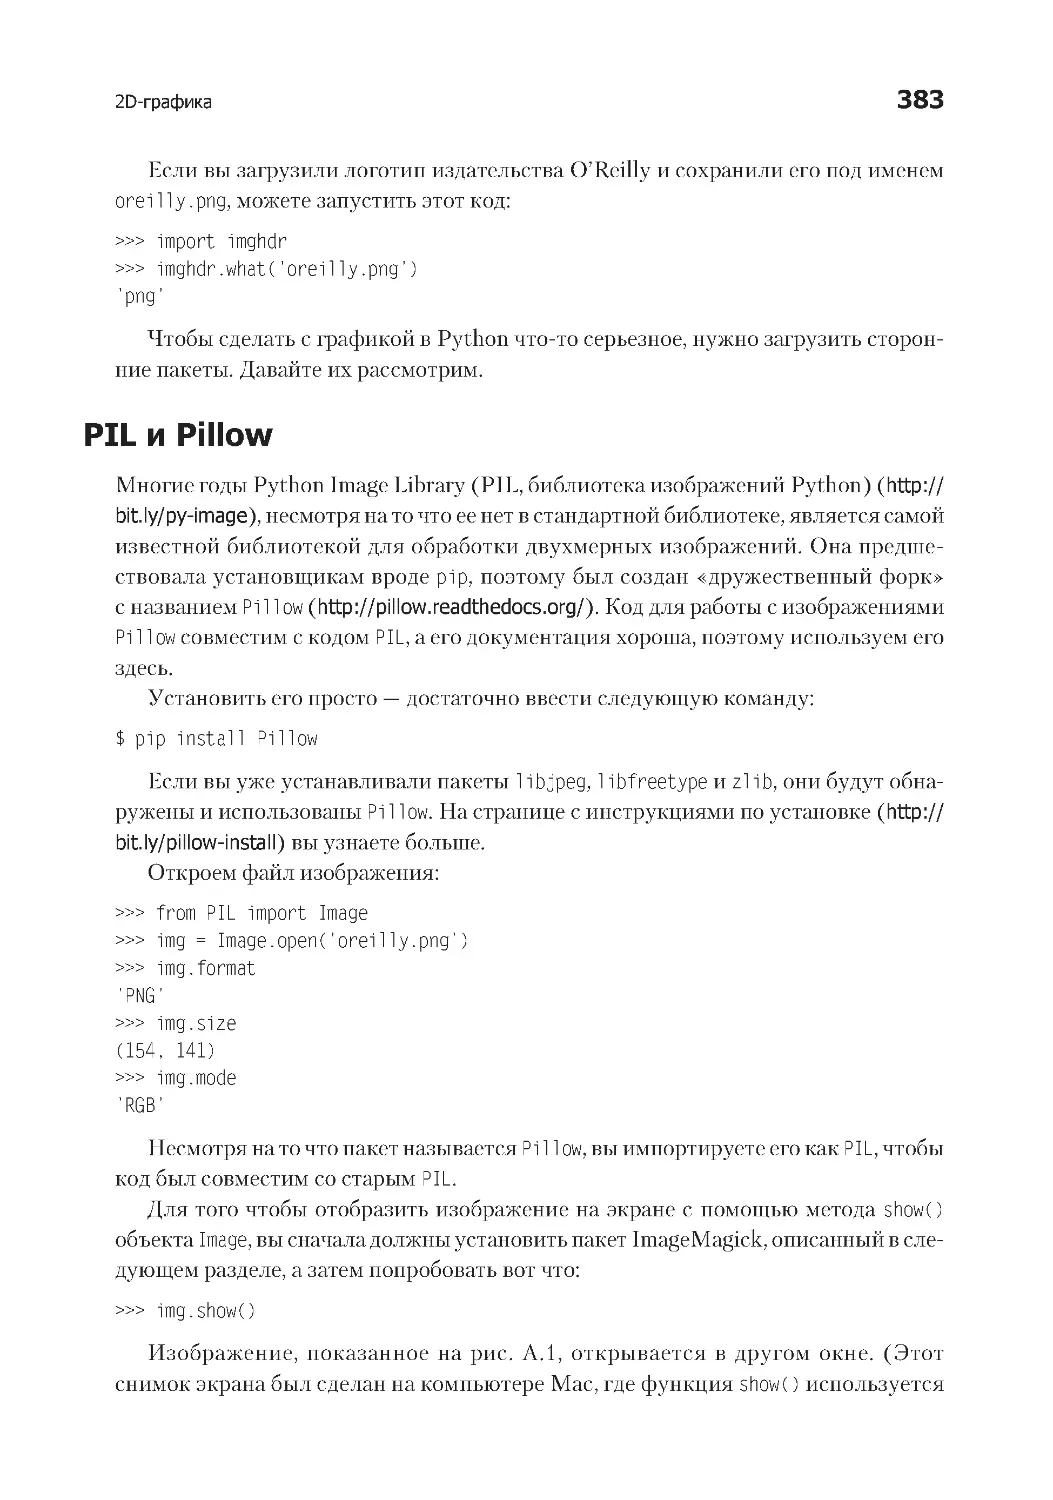 PIL и Pillow